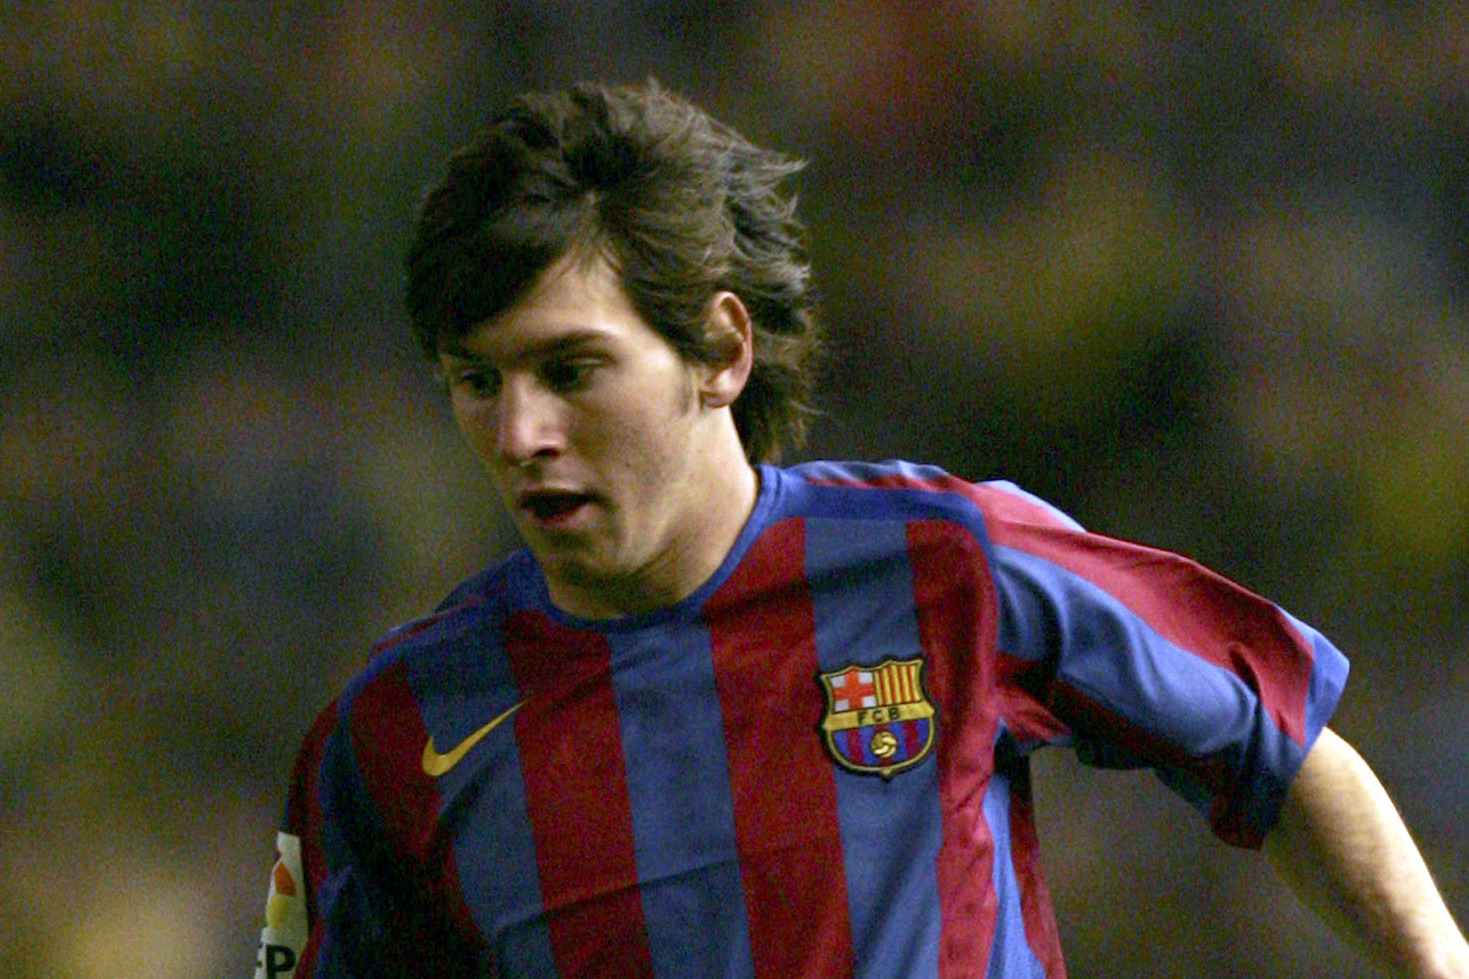  El Barcelona revela un video inédito de Messi a los 16 años